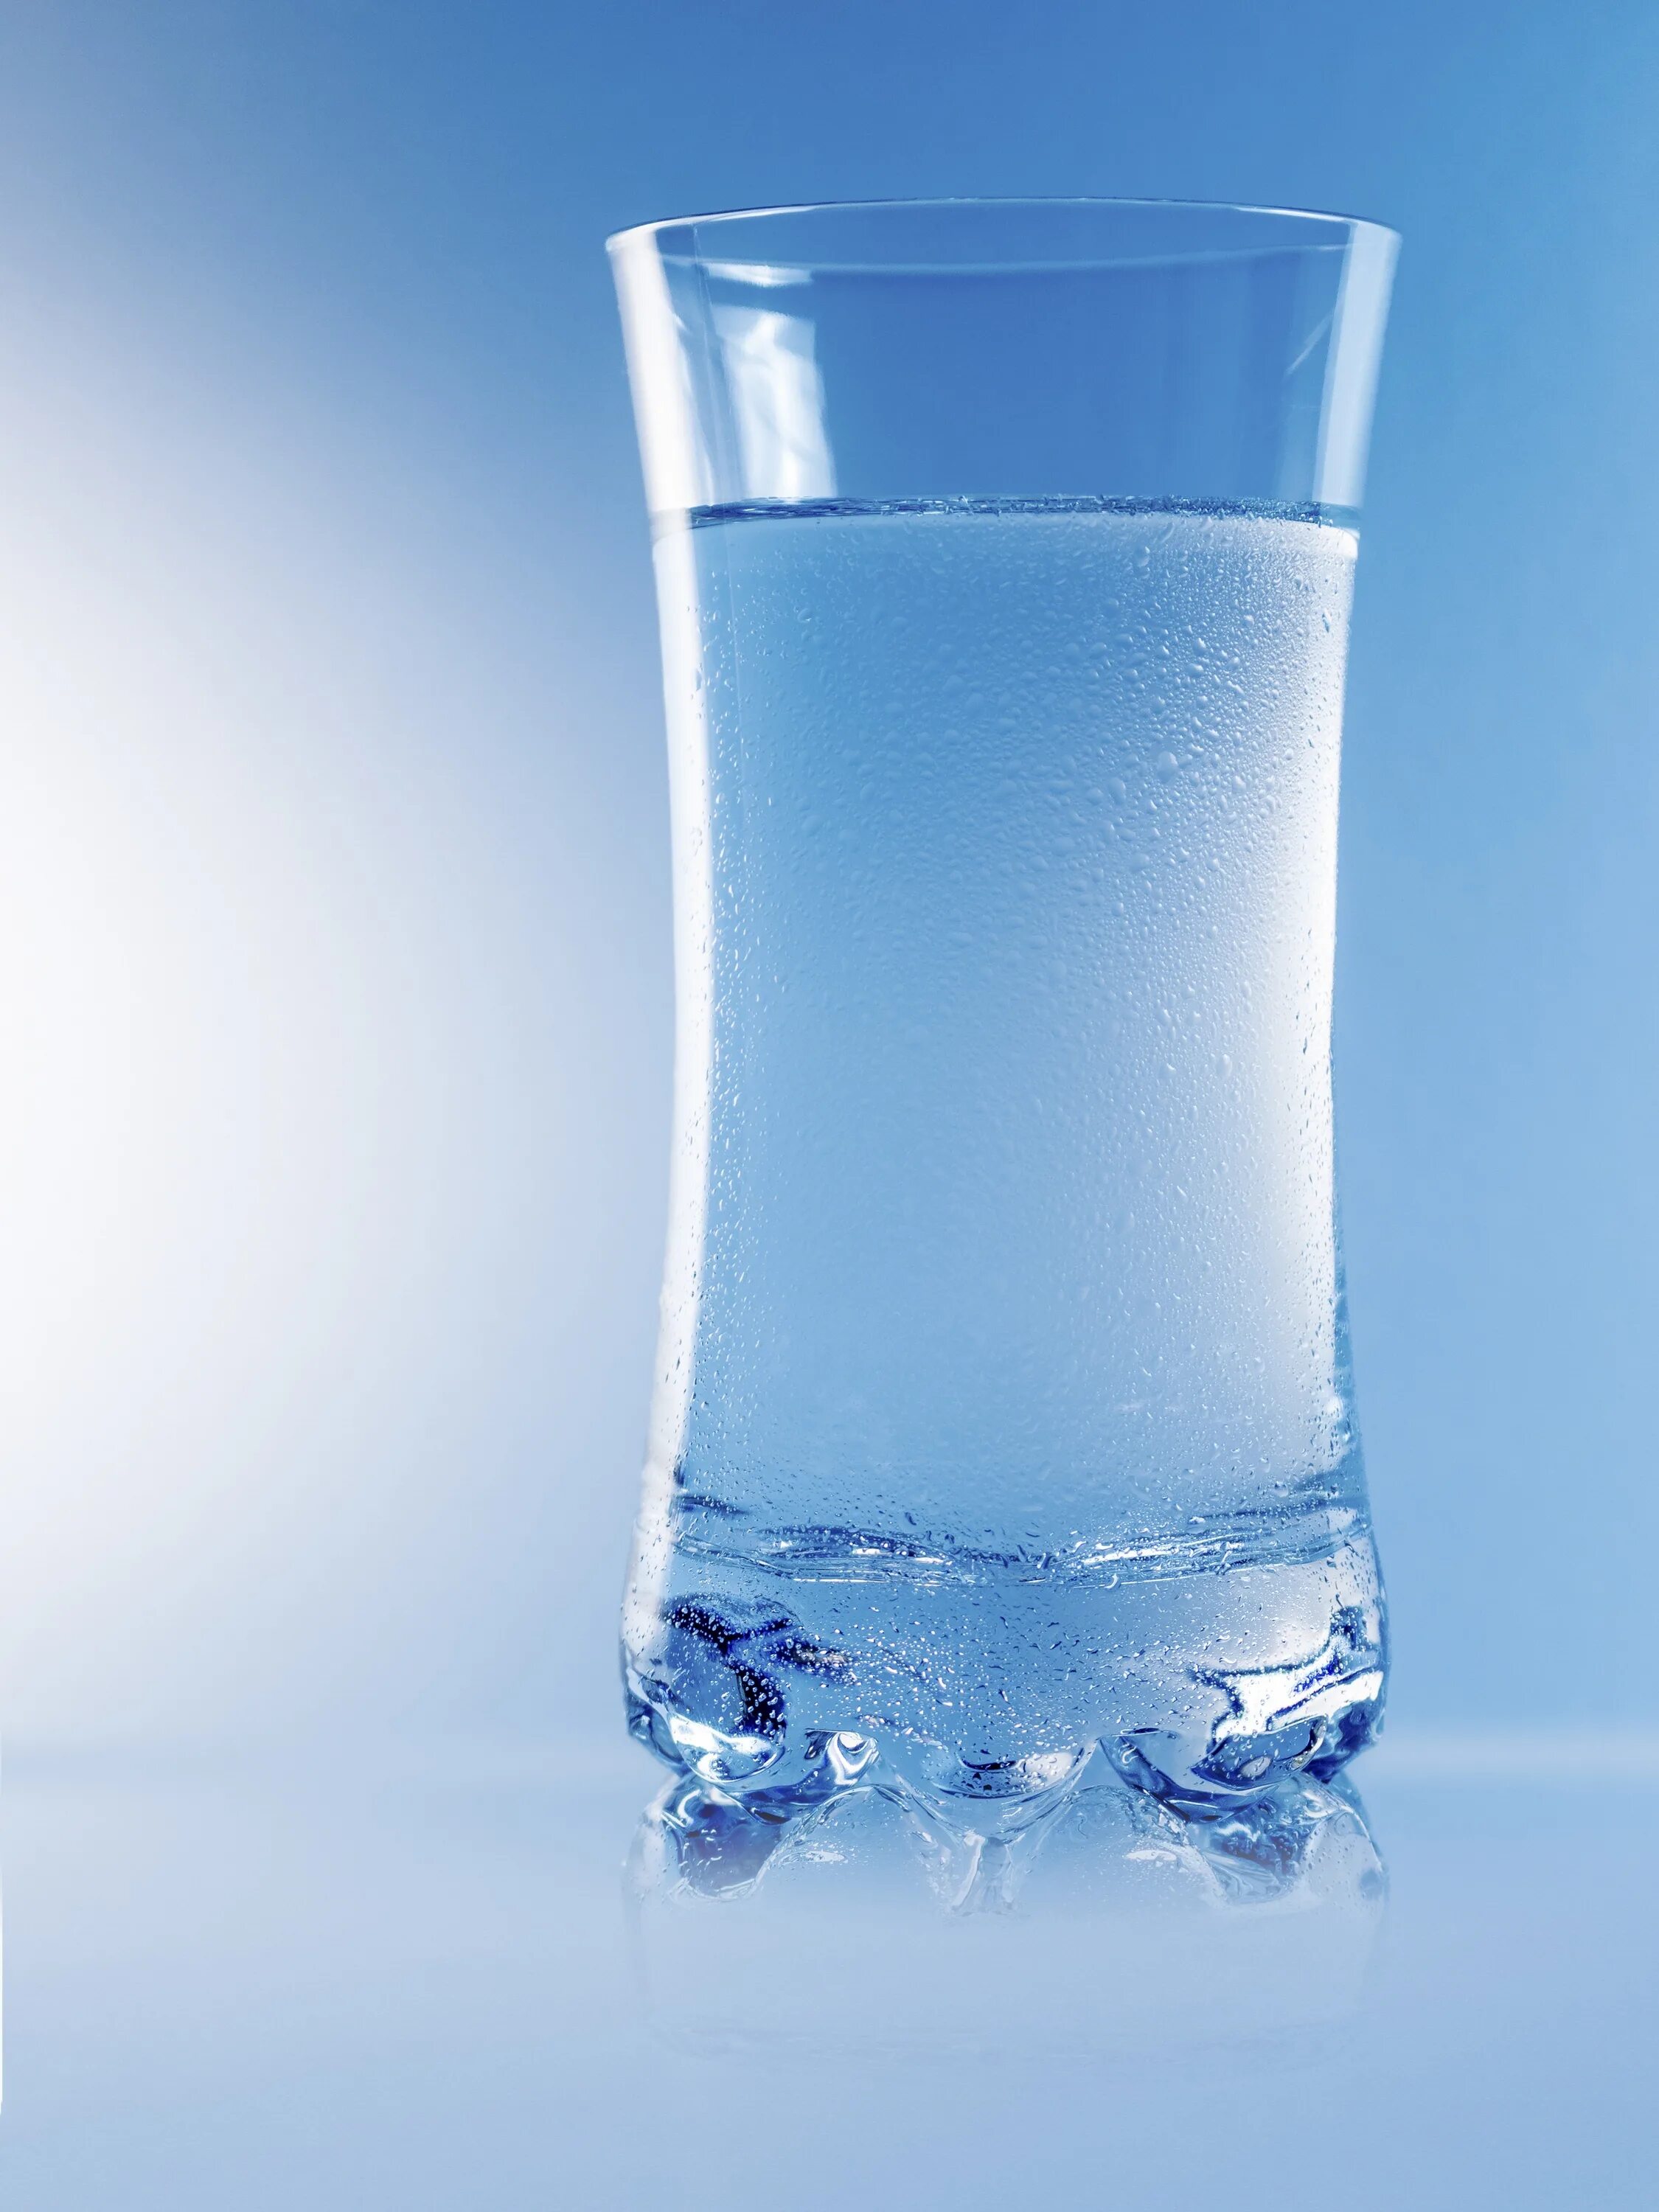 0 25 стакан воды. Стакан воды. Чистая вода. Стакан чистой воды. Красивые стаканы для воды.